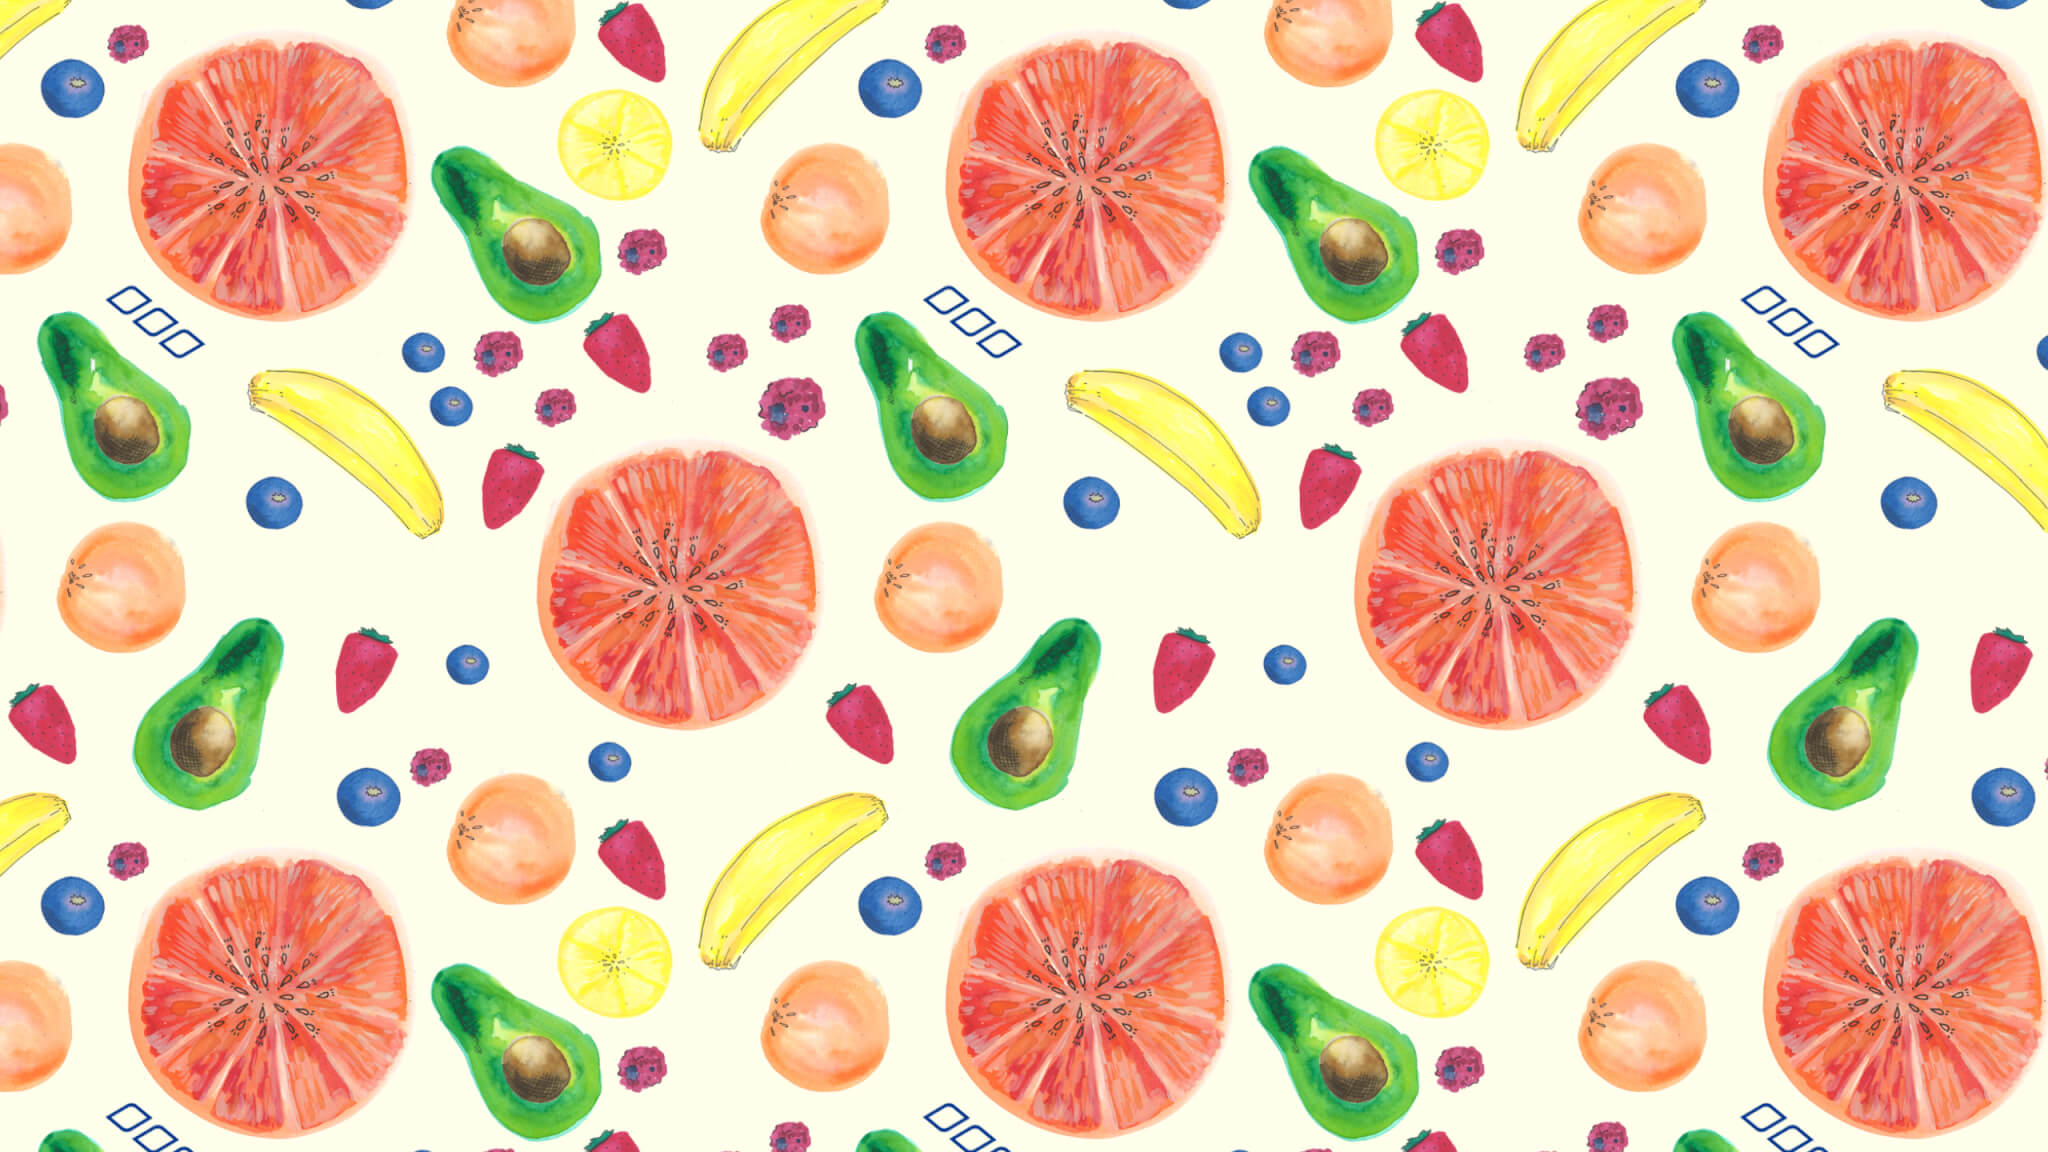 과일 패턴 벽지,감귤류,주황색,과일,그레이프 프루트,무늬